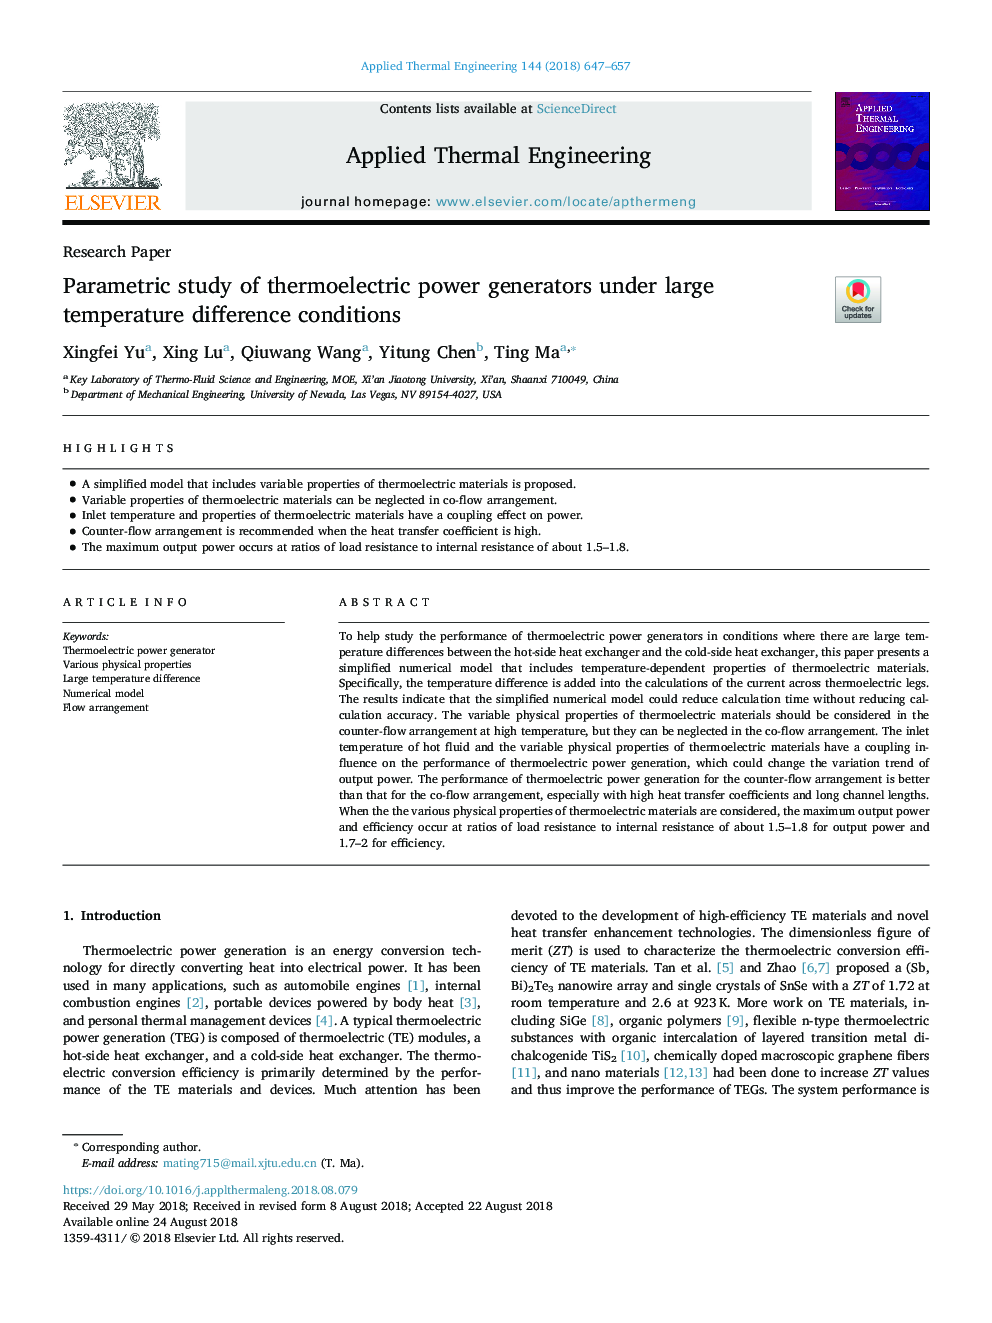 بررسی پارامترهای ژنراتورهای ترموالکتریک در شرایط مختلف تفاوت دما